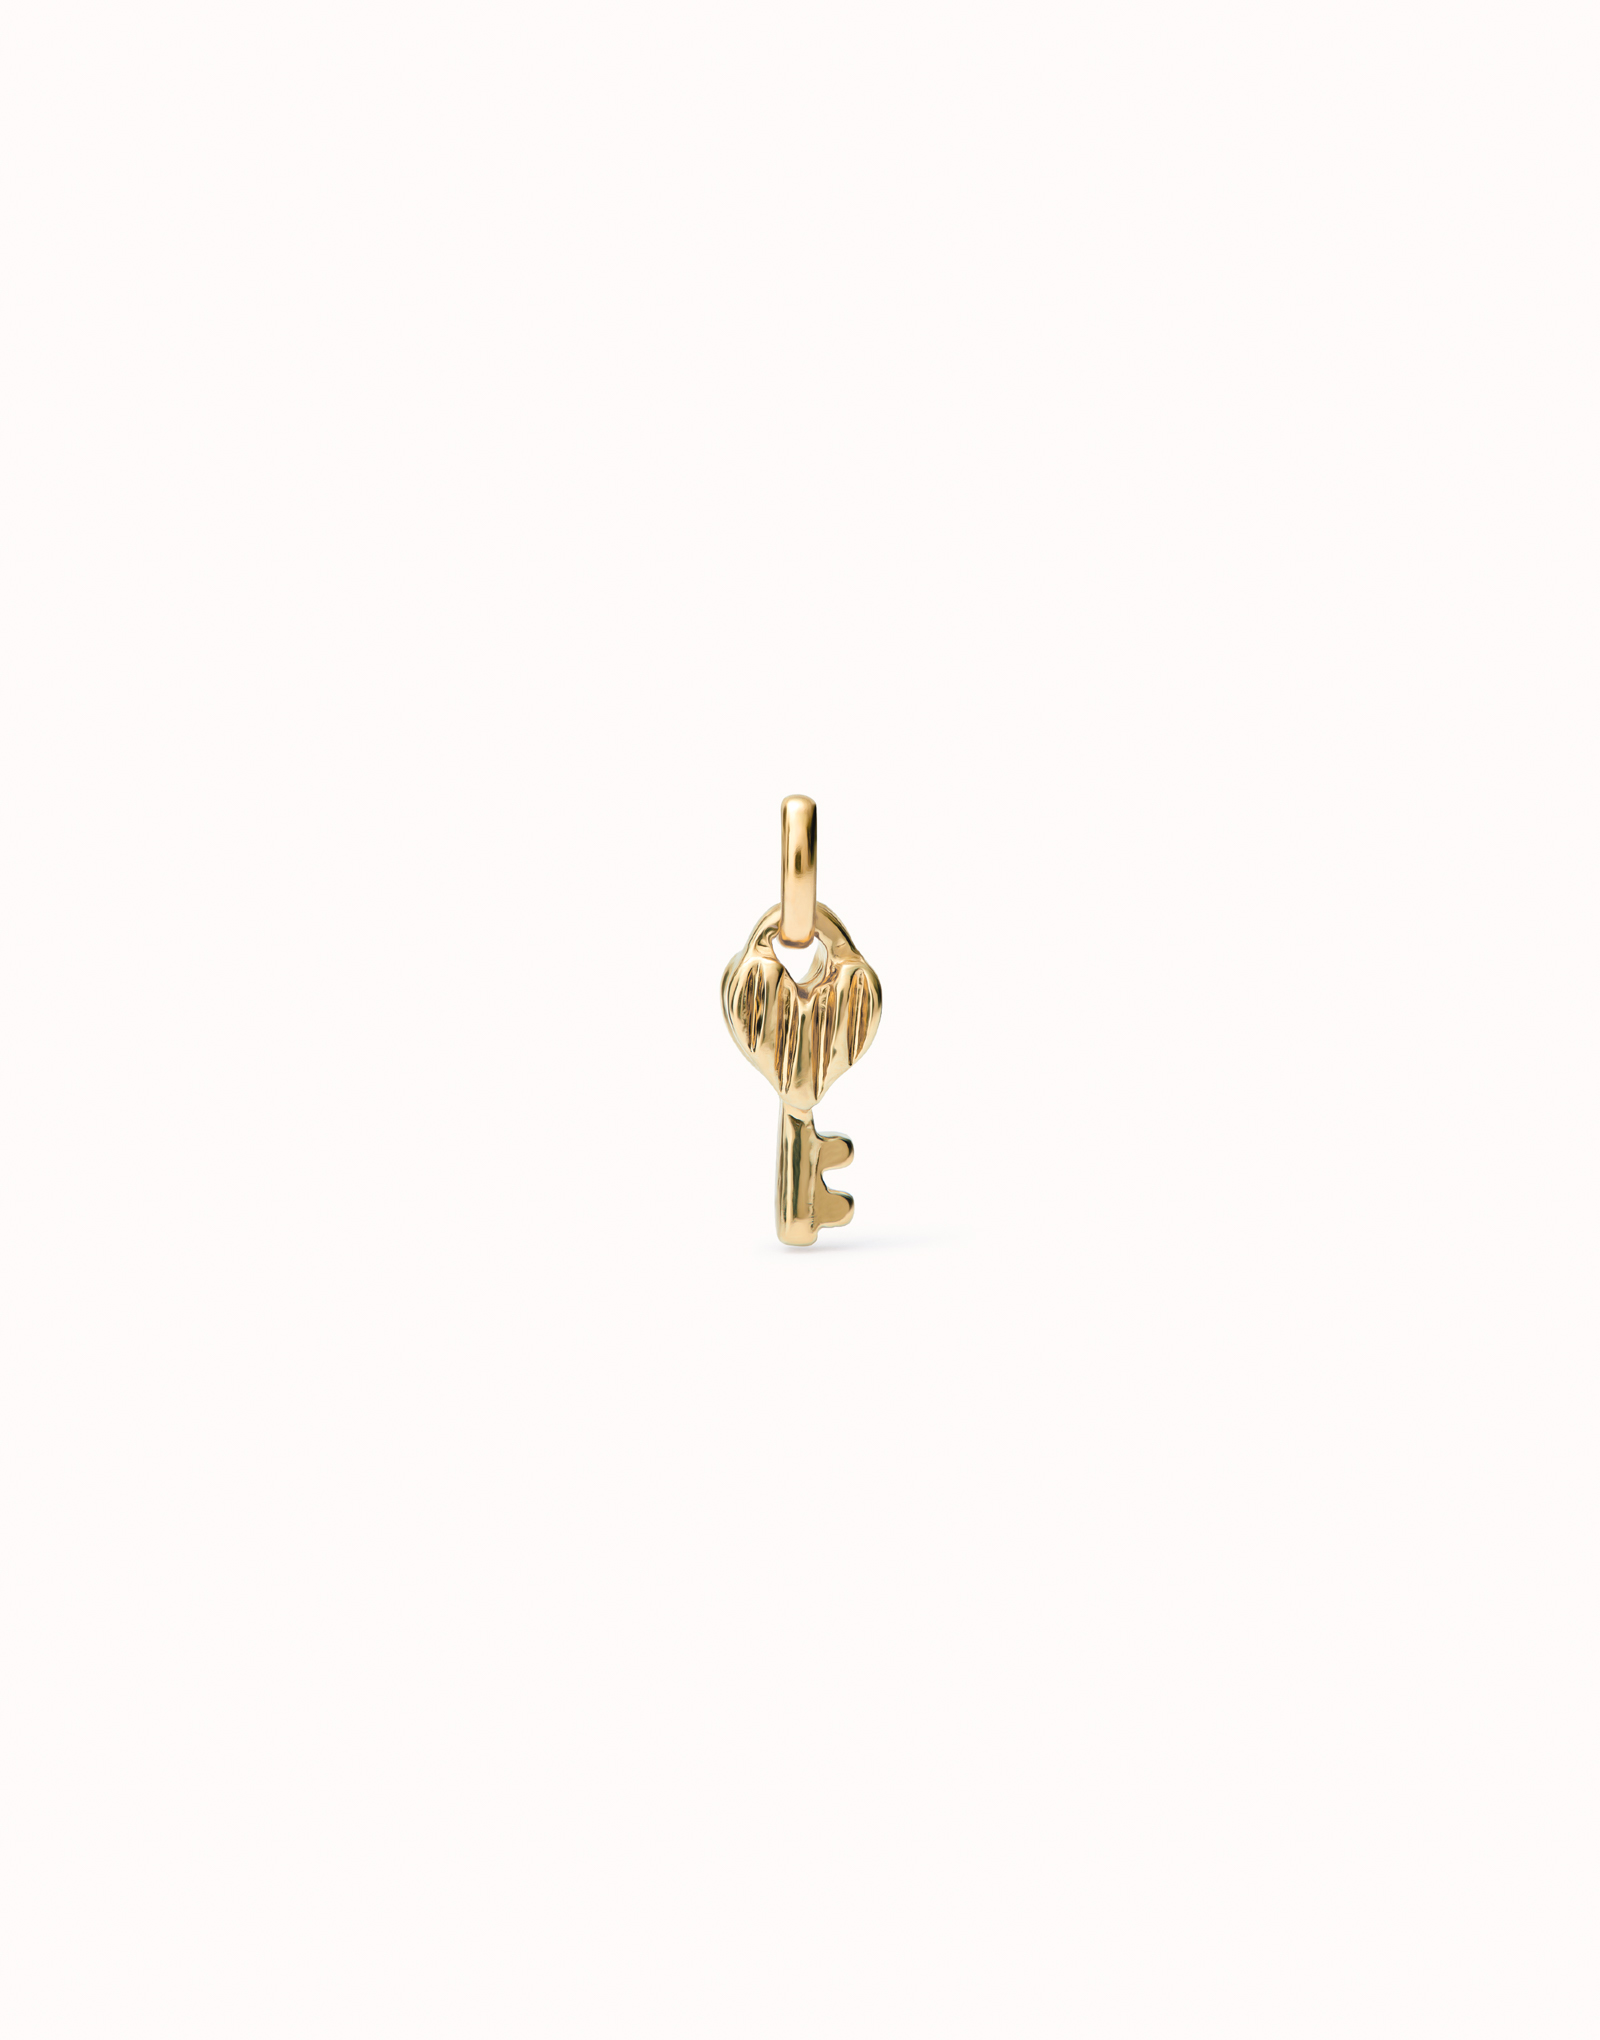 Charm  bañado en oro 18k con forma de llave., Dorado, large image number null